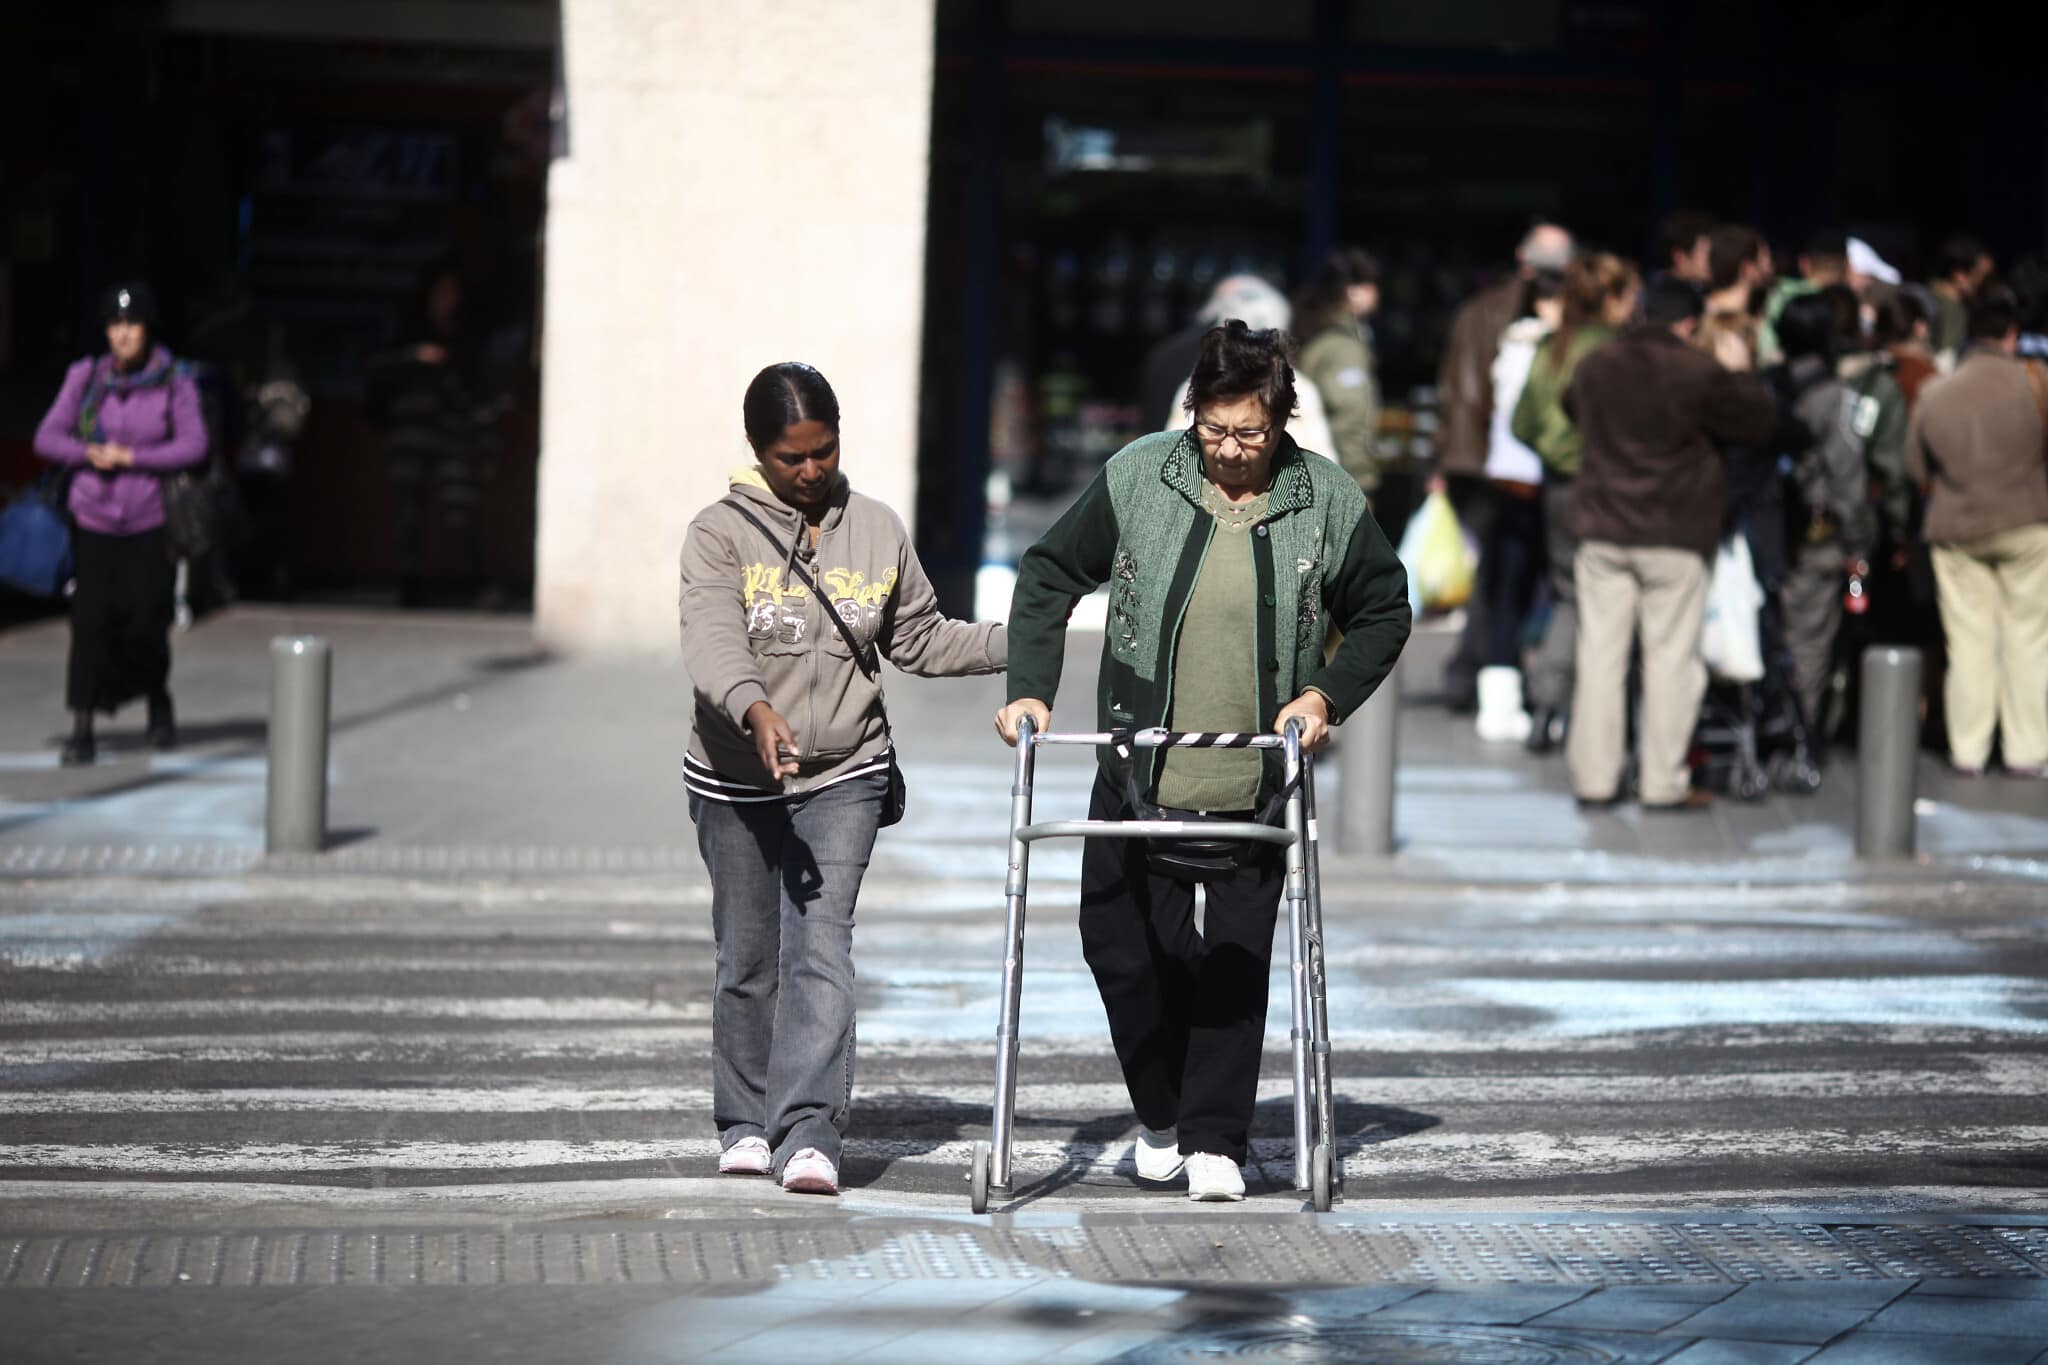 אילוסטרציה: מטפלת פיליפינית מסייעת לקשישה לחצות את הכביש ליד התחנה המרכזית בירושלים. למצולמים אין קשר לנאמר בכתבה (צילום: קובי גדעון/פלאש90)